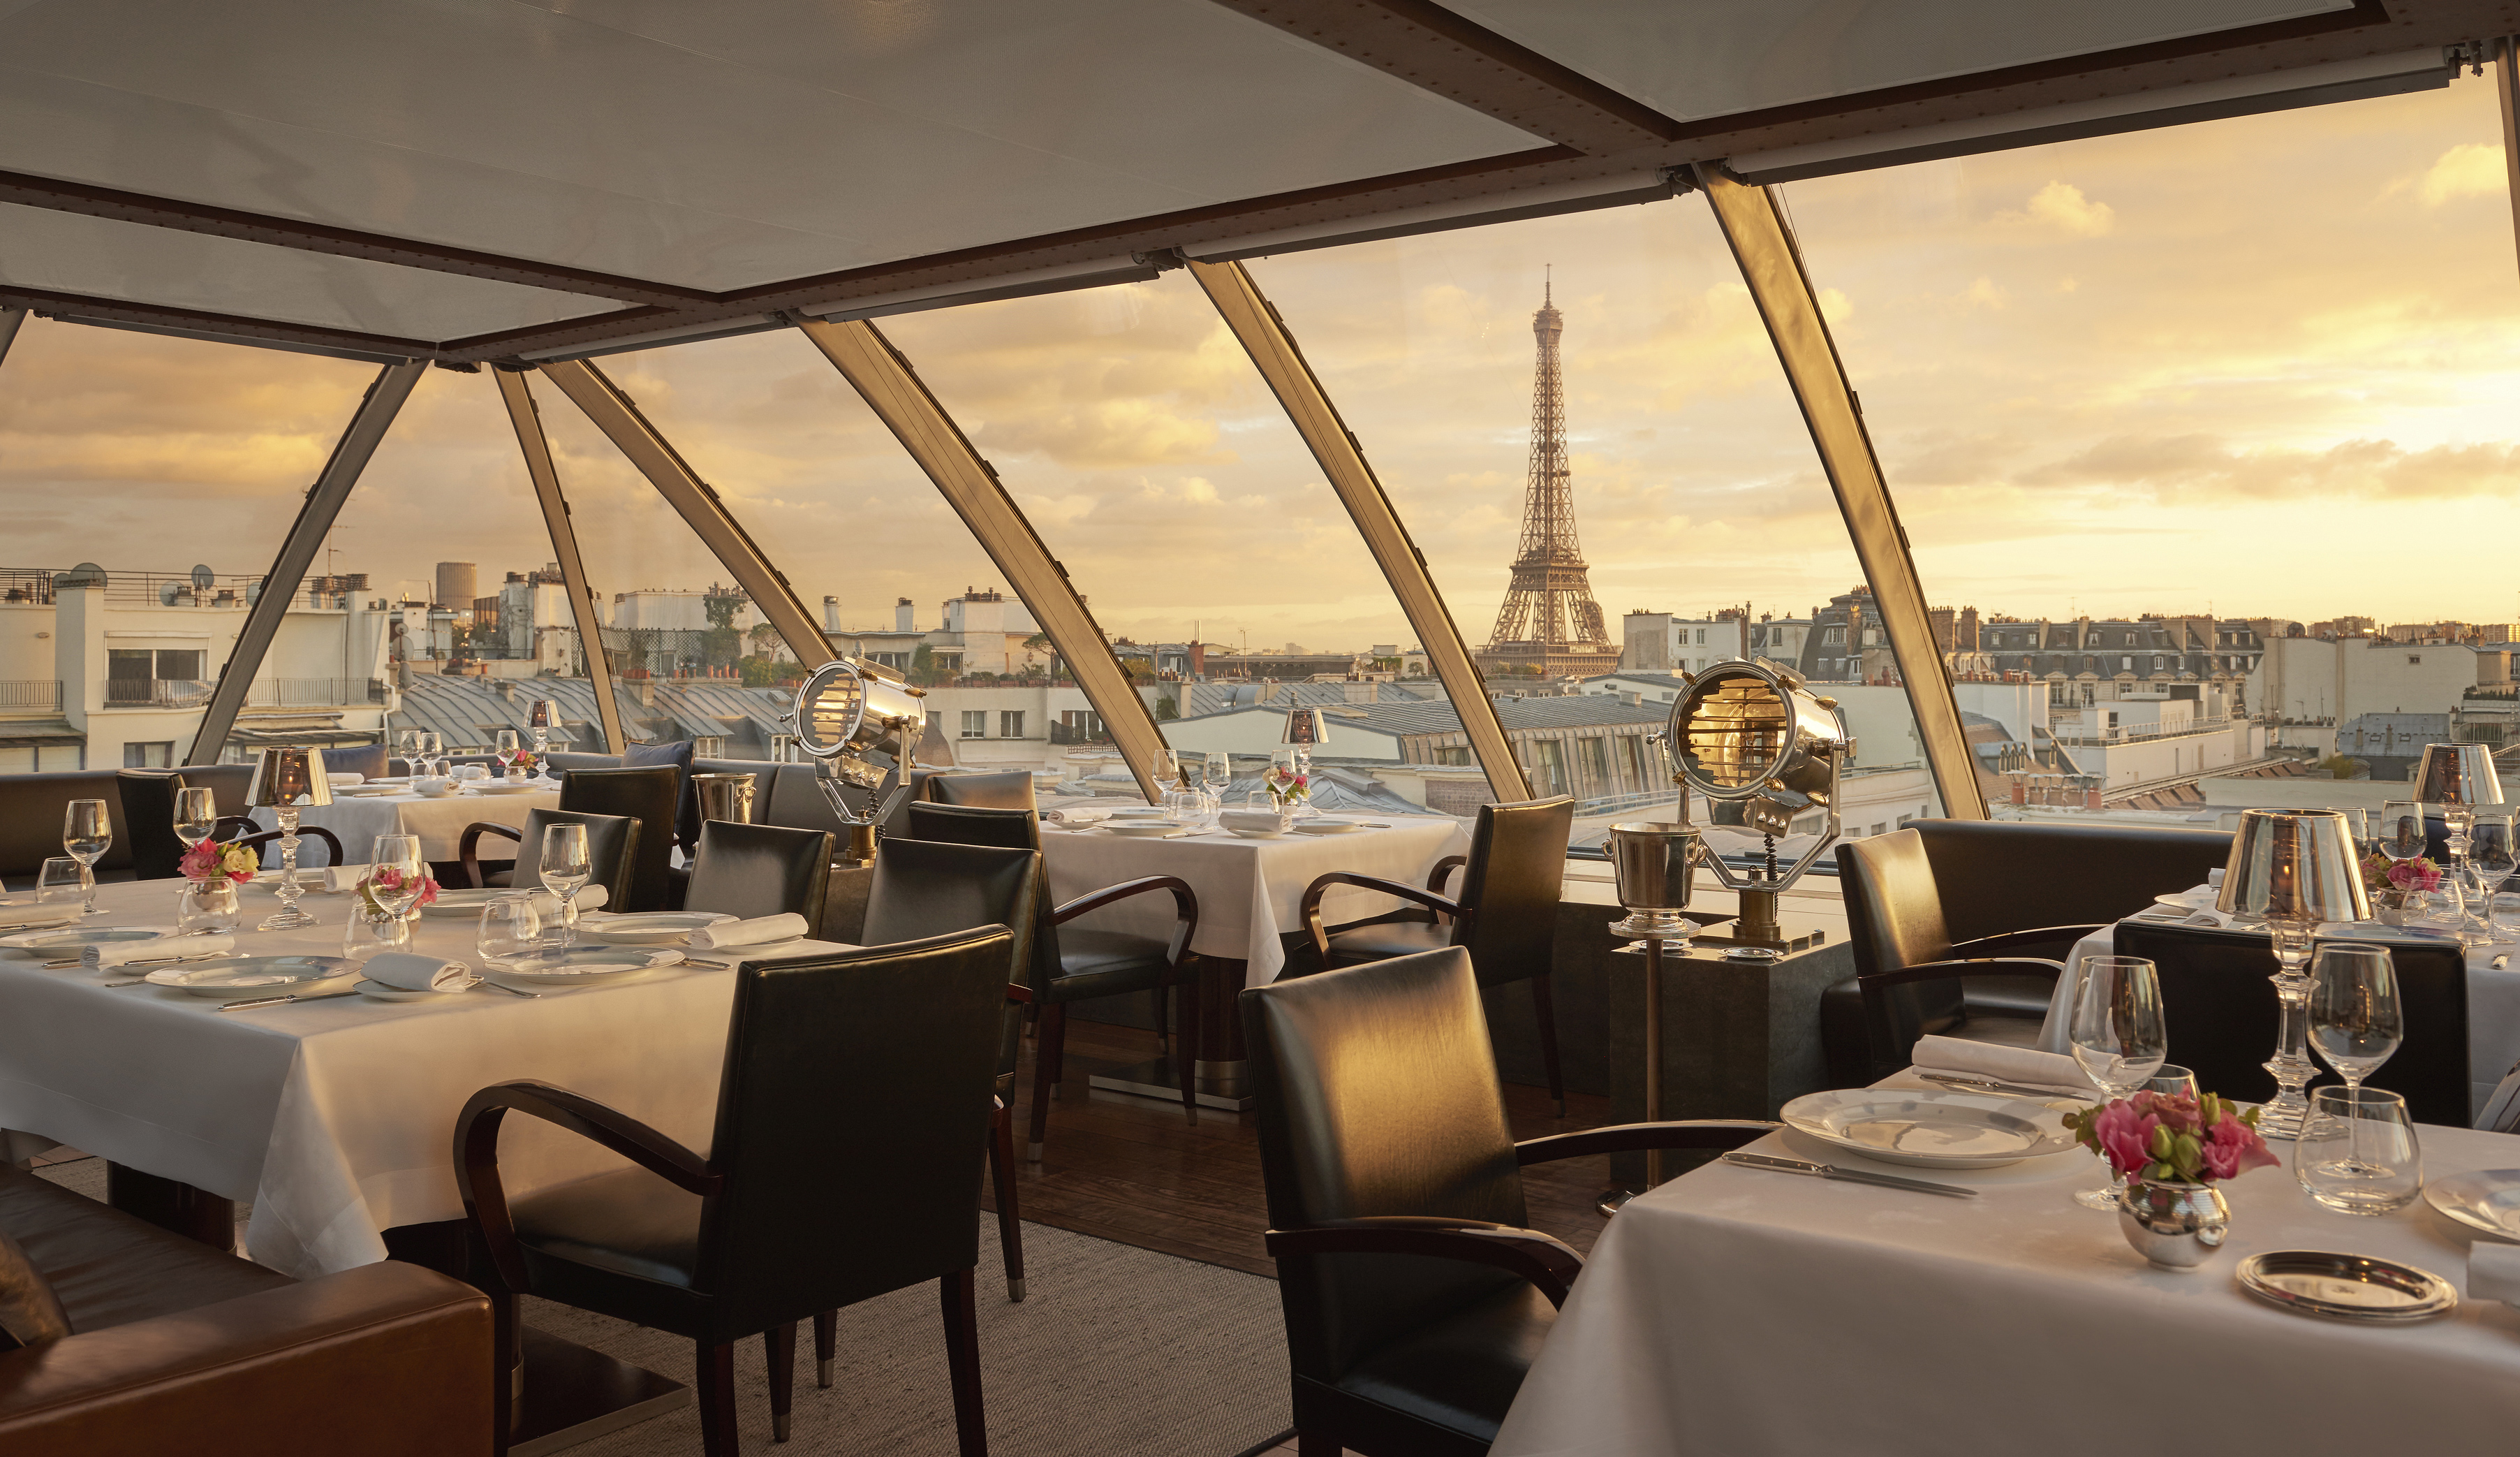 La vue sur la Tour Eiffel depuis la salle du restaurant gastronomique L’Oiseau Blanc - Crédit : The Peninsula